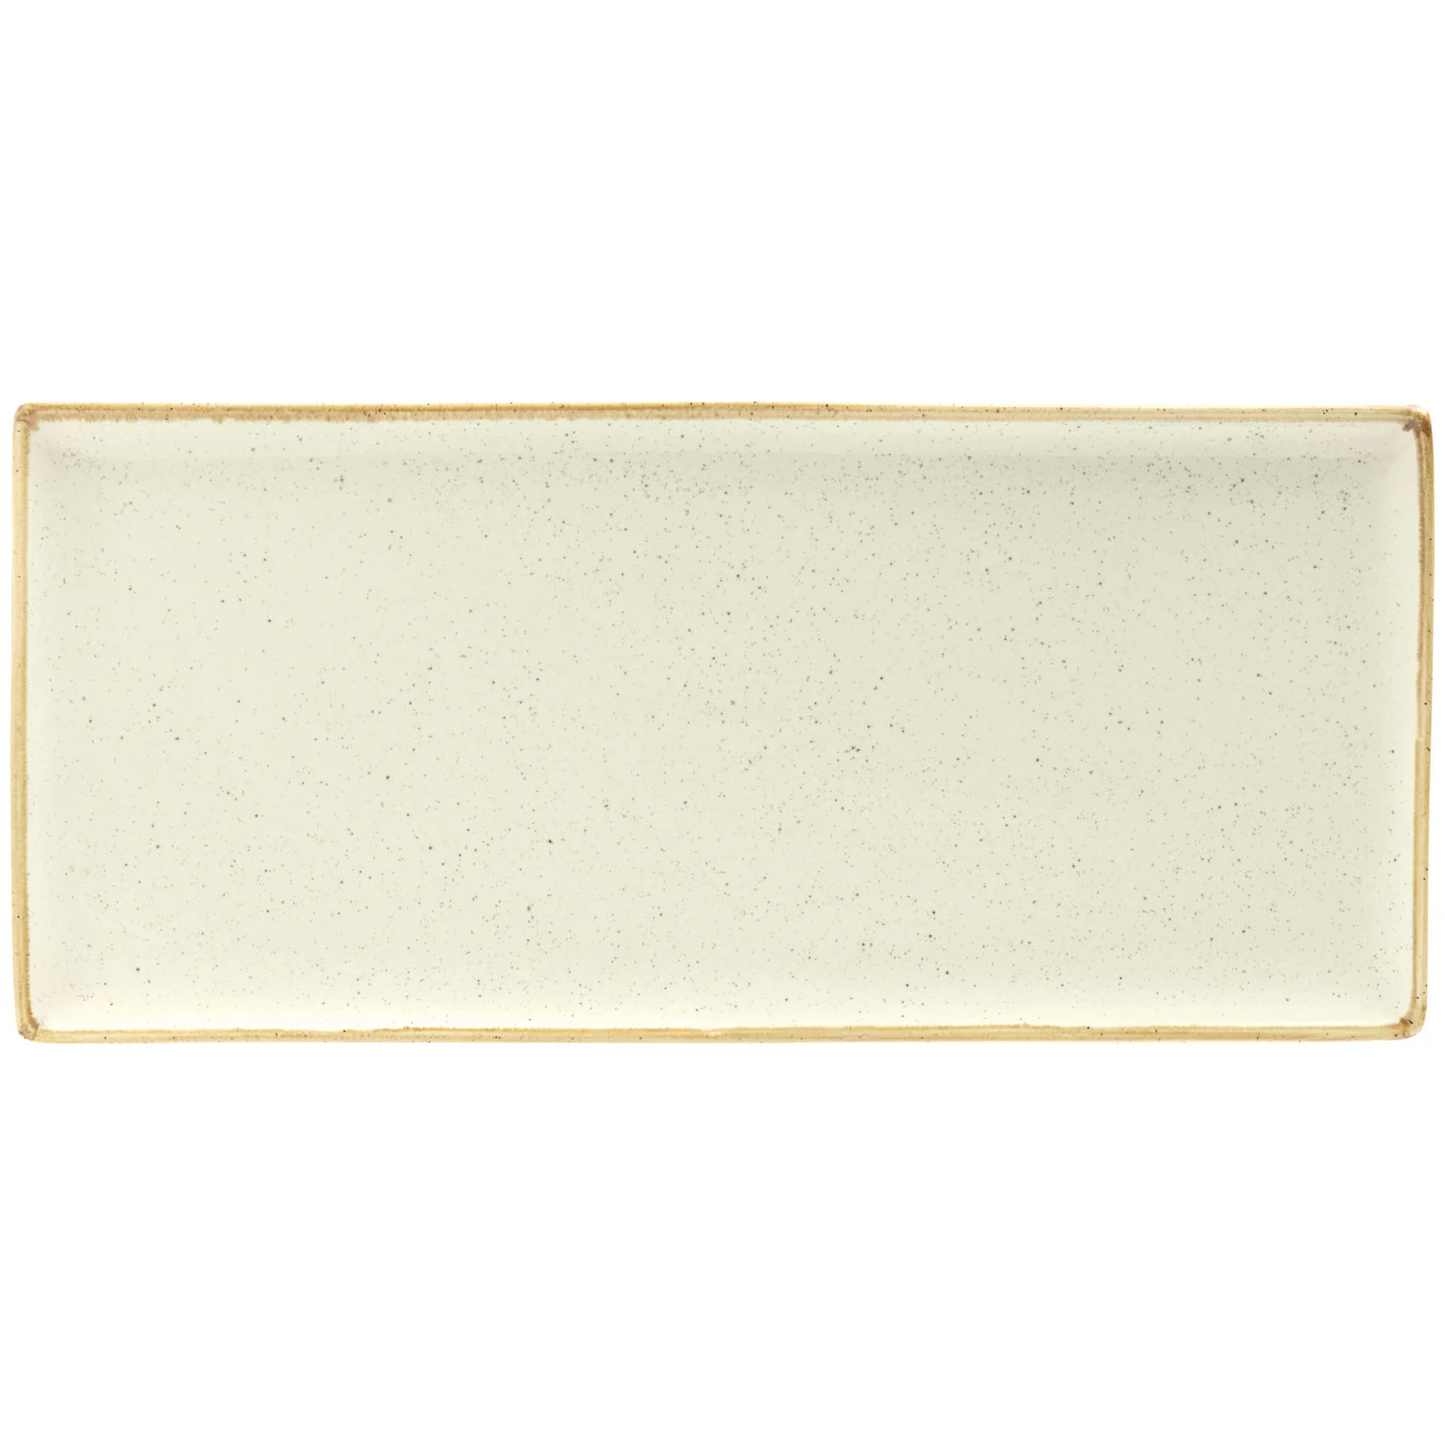 Platter Sidina rectangular